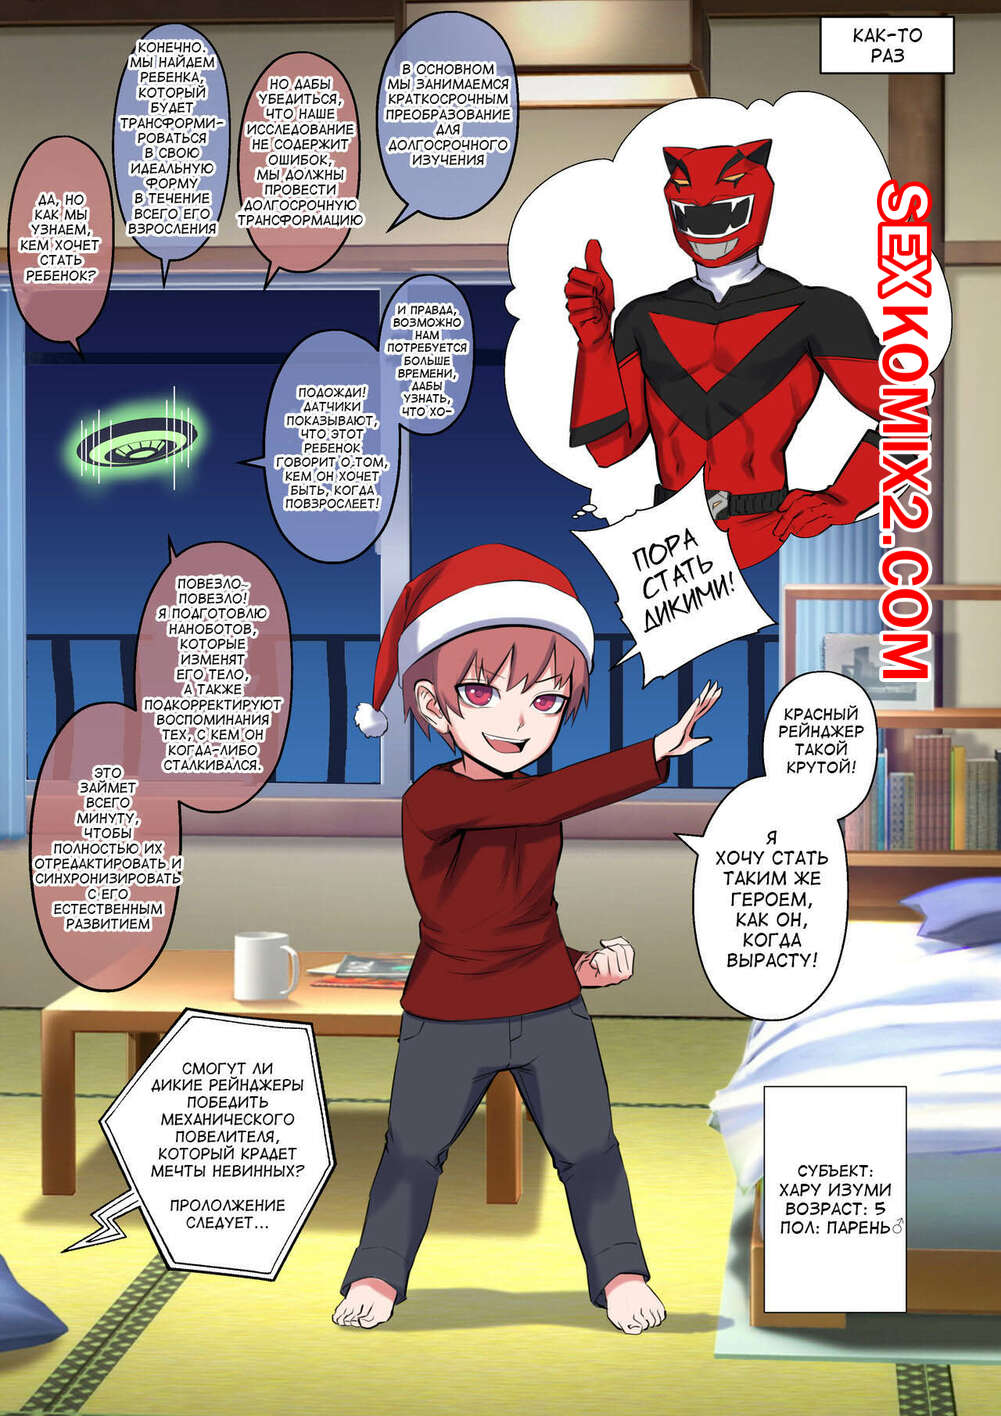 ✅️ Порно комикс Super Sentai. A Christmas Wish. Ideal Body. Arisa Yoshi  секс комикс парень загадал на | Порно комиксы на русском языке только для  взрослых | sexkomix2.com